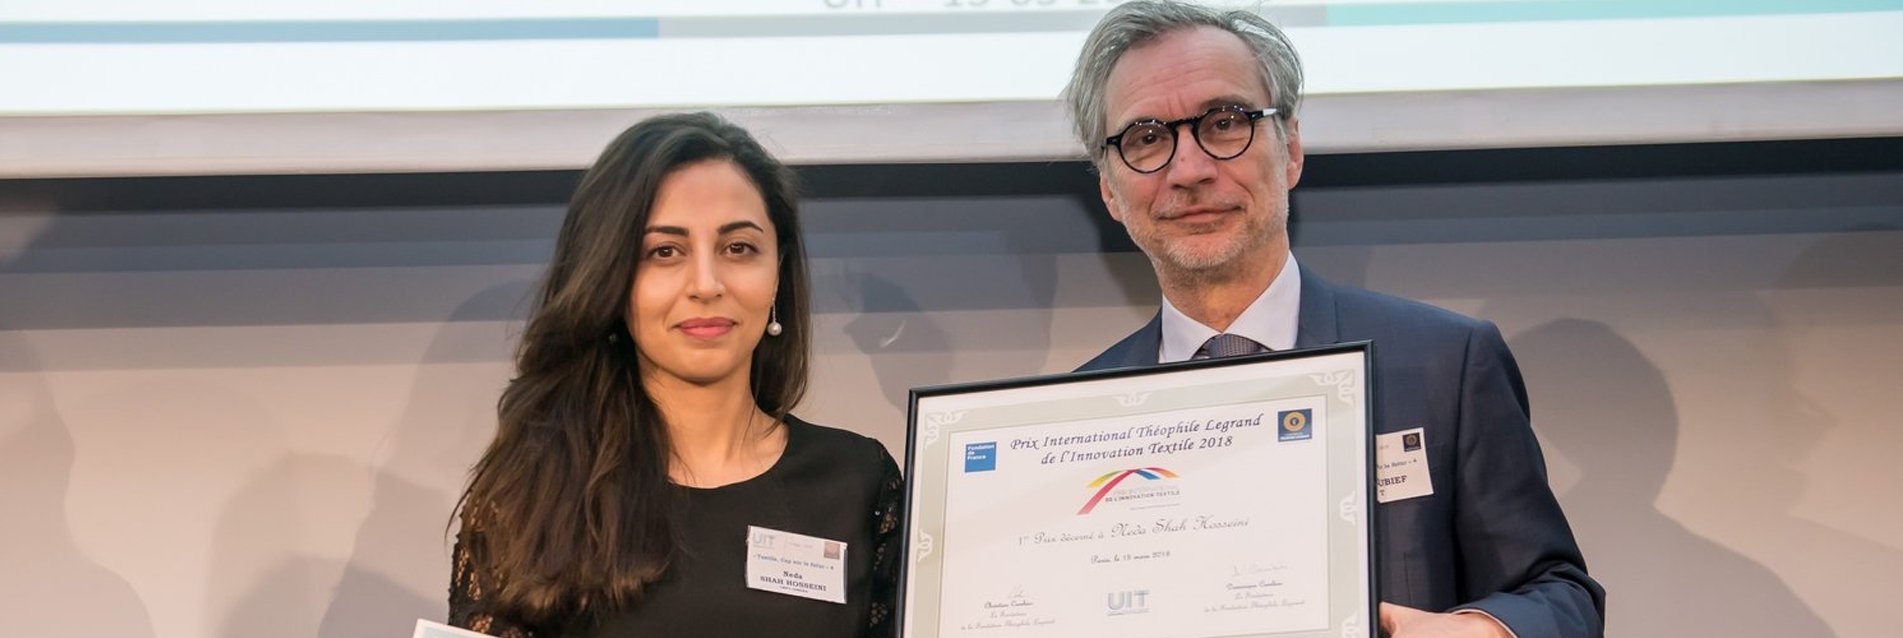 La Fondation Théophile Legrand remet son prix de l’Innovation Textile 2018